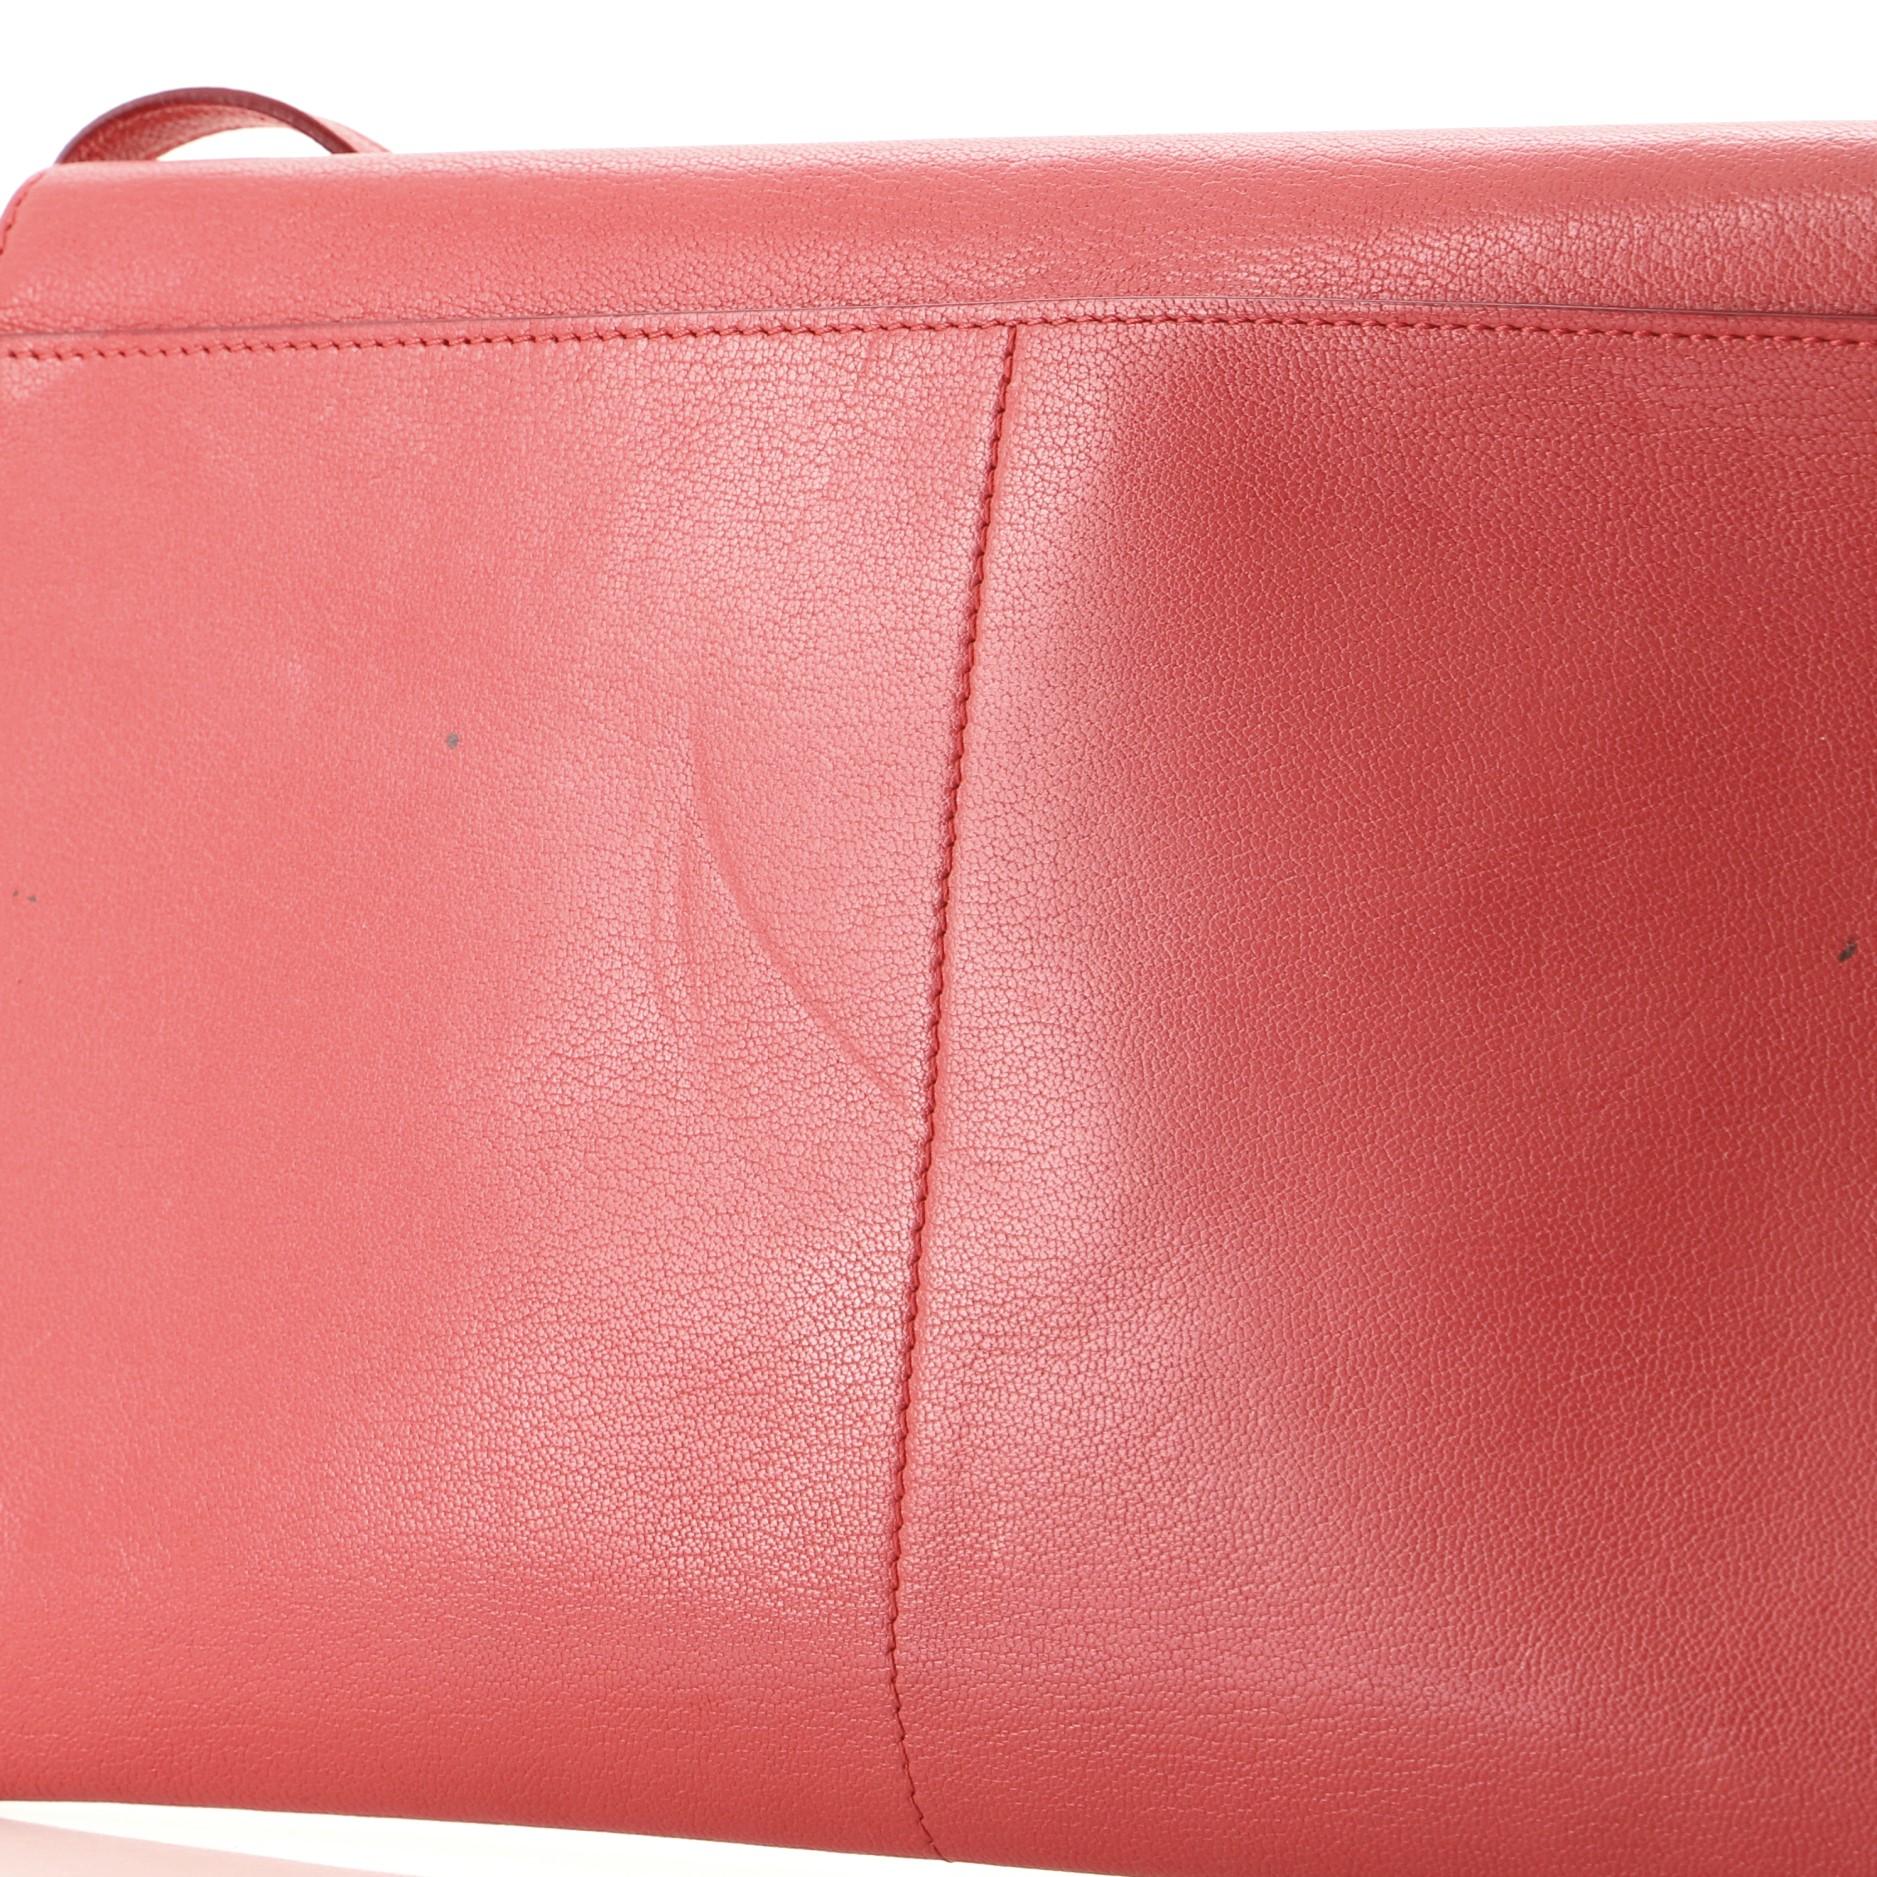 Women's or Men's Celine Folded Strap Clutch Leather